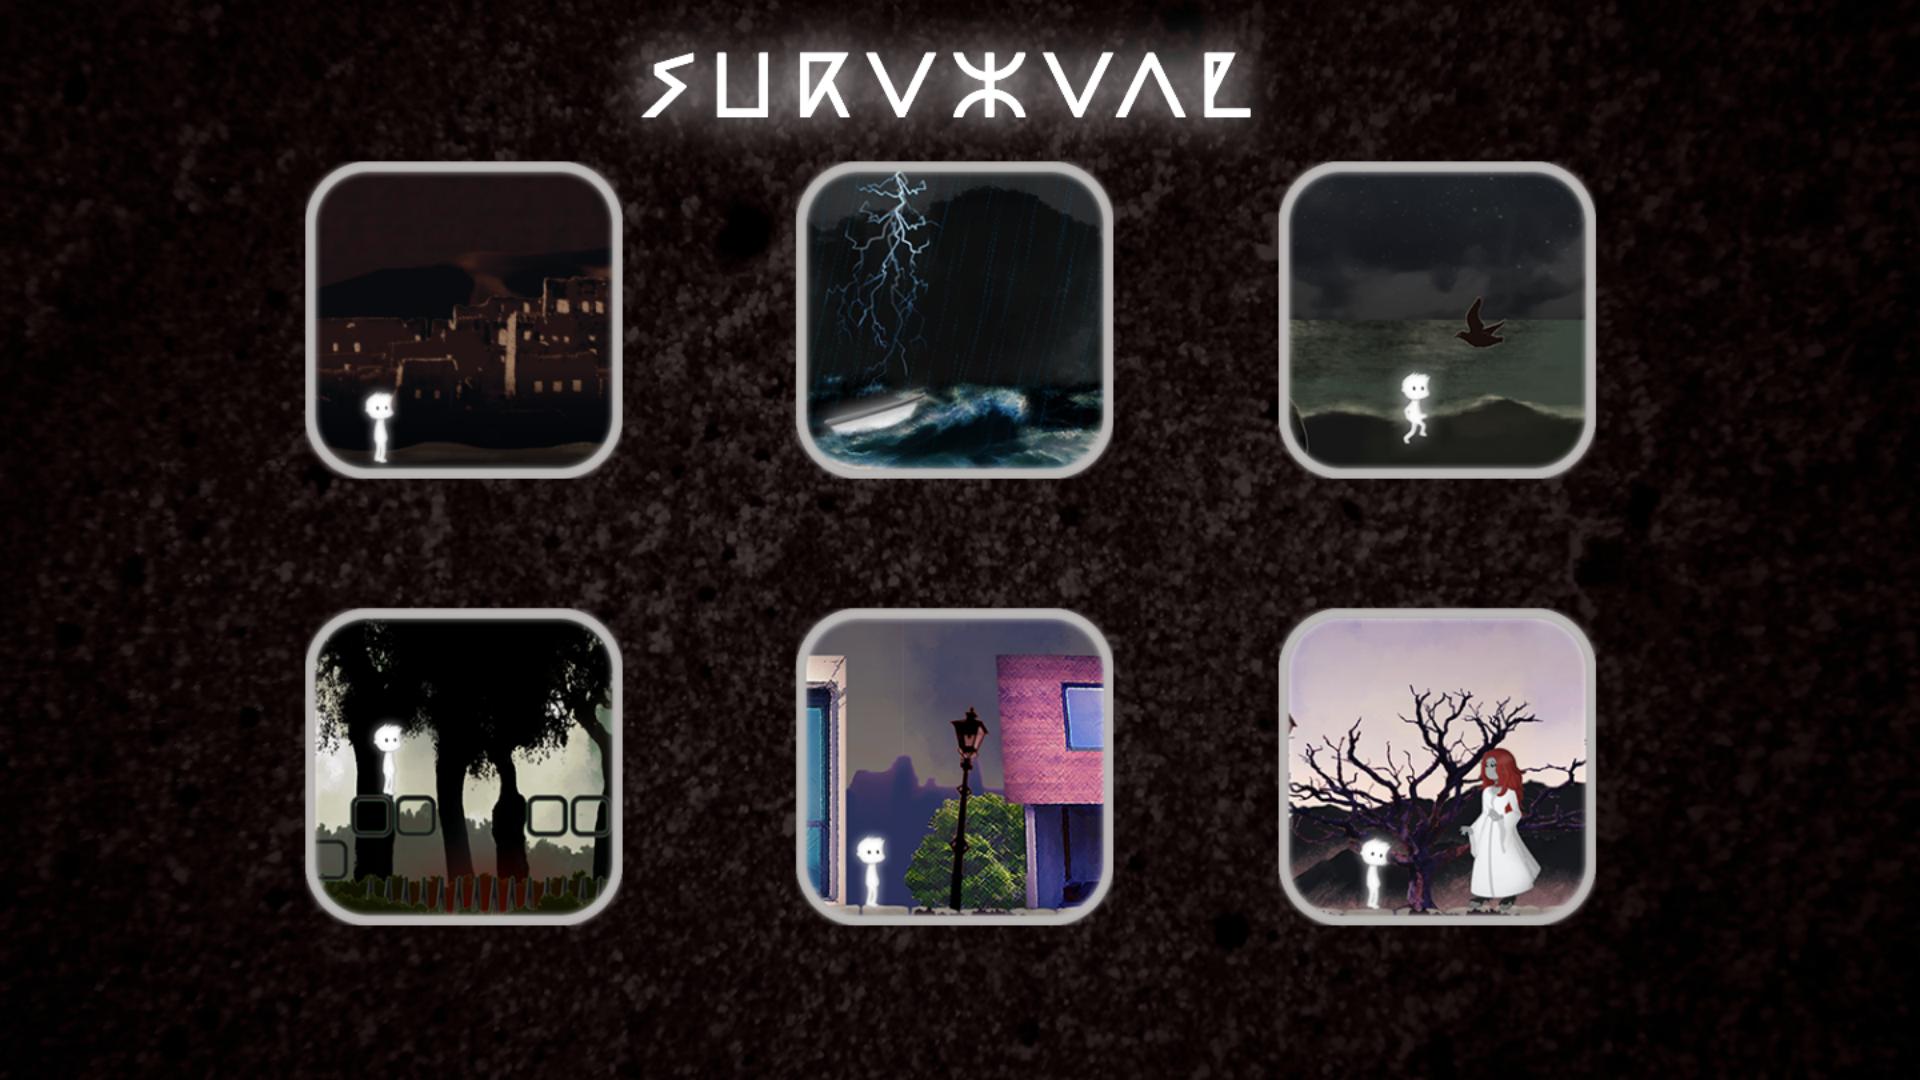 Игра IOS of Survival. Экран загрузки Survival. App Survival. Survival game e-made+.